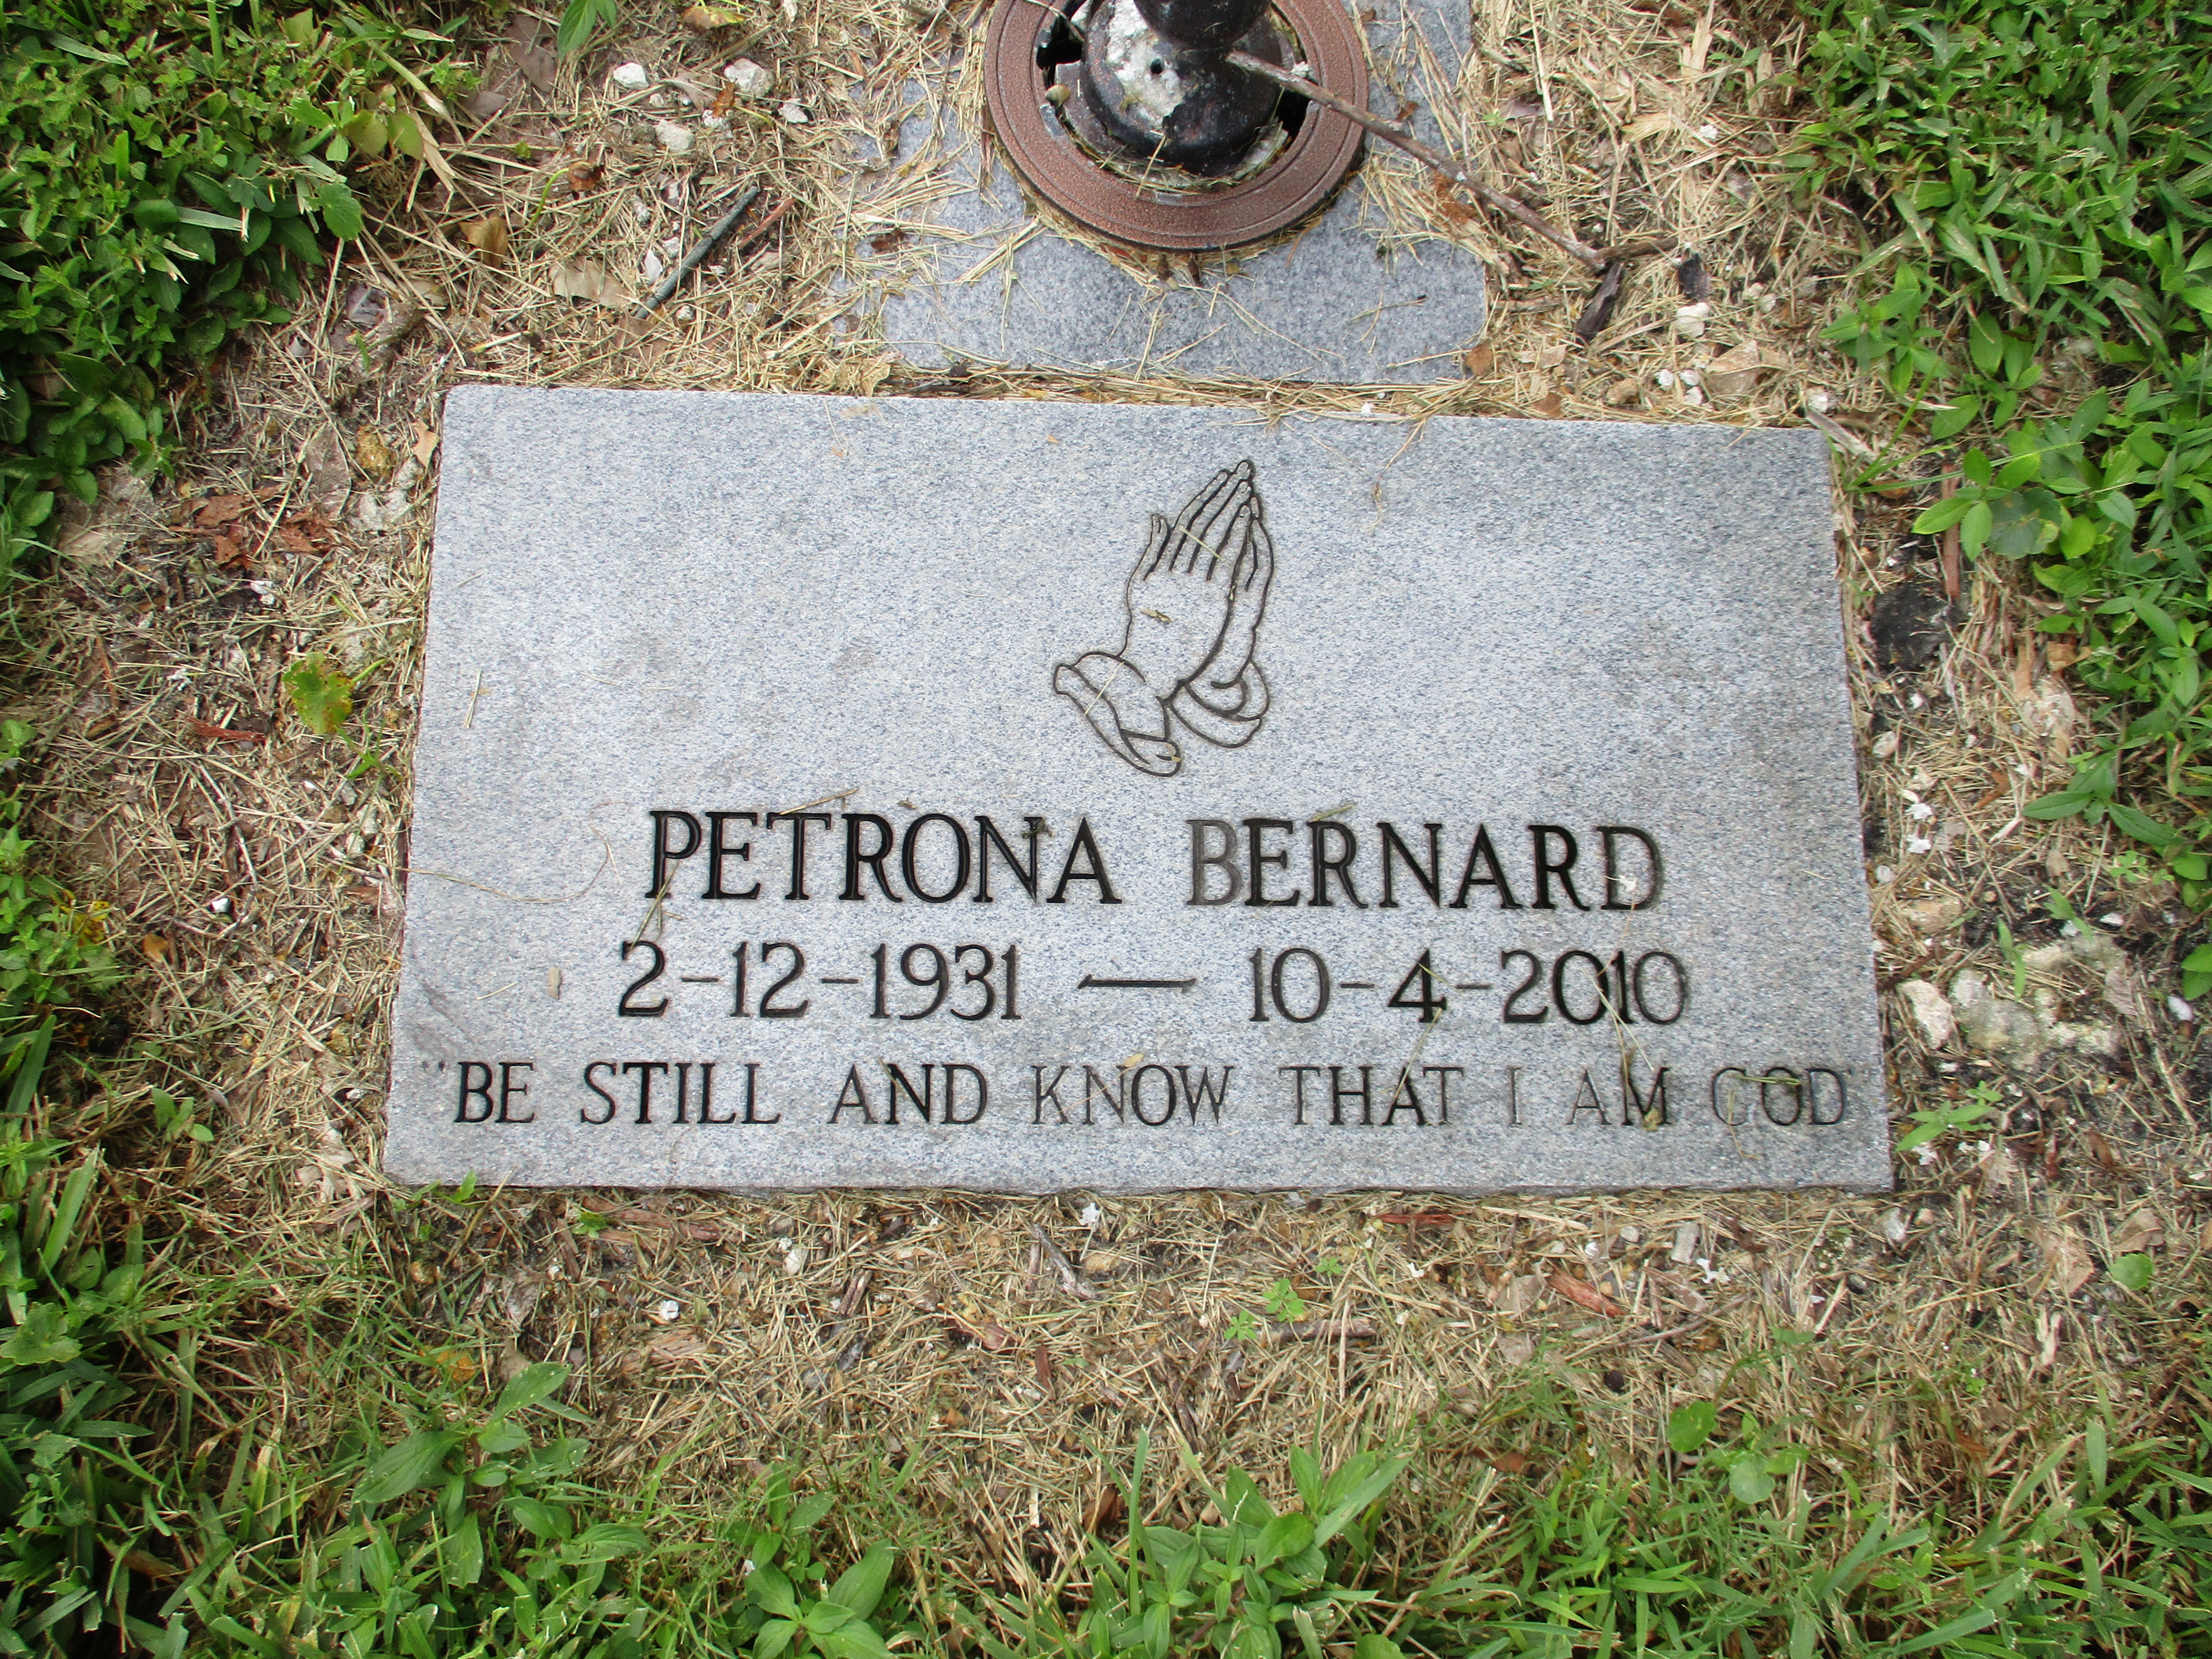 Petrona Bernard